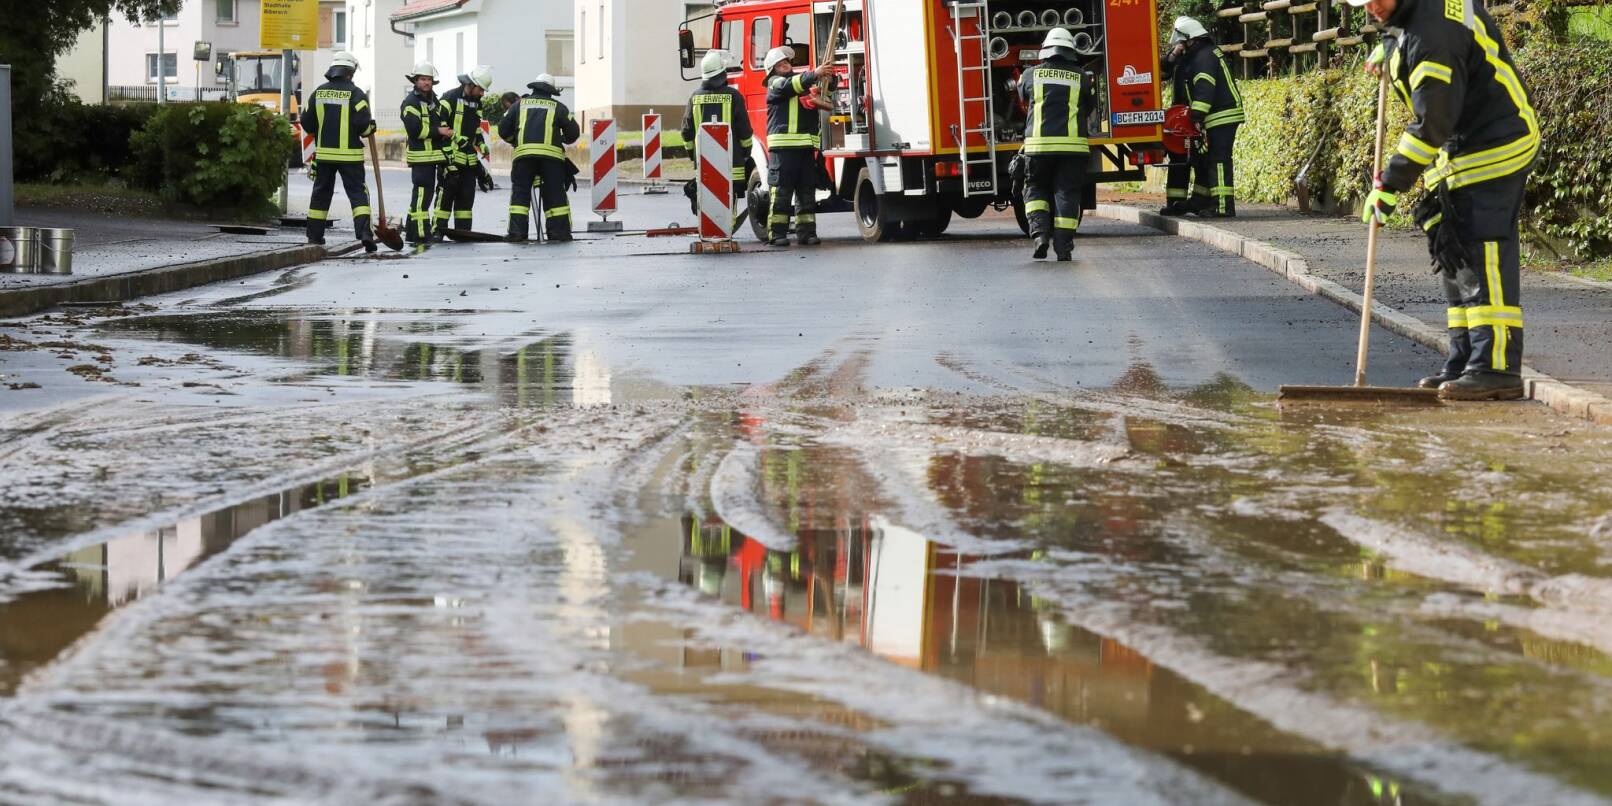 Einsatzkräfte der Feuerwehr reinigen eine überflutete und verschmutzte Straße.